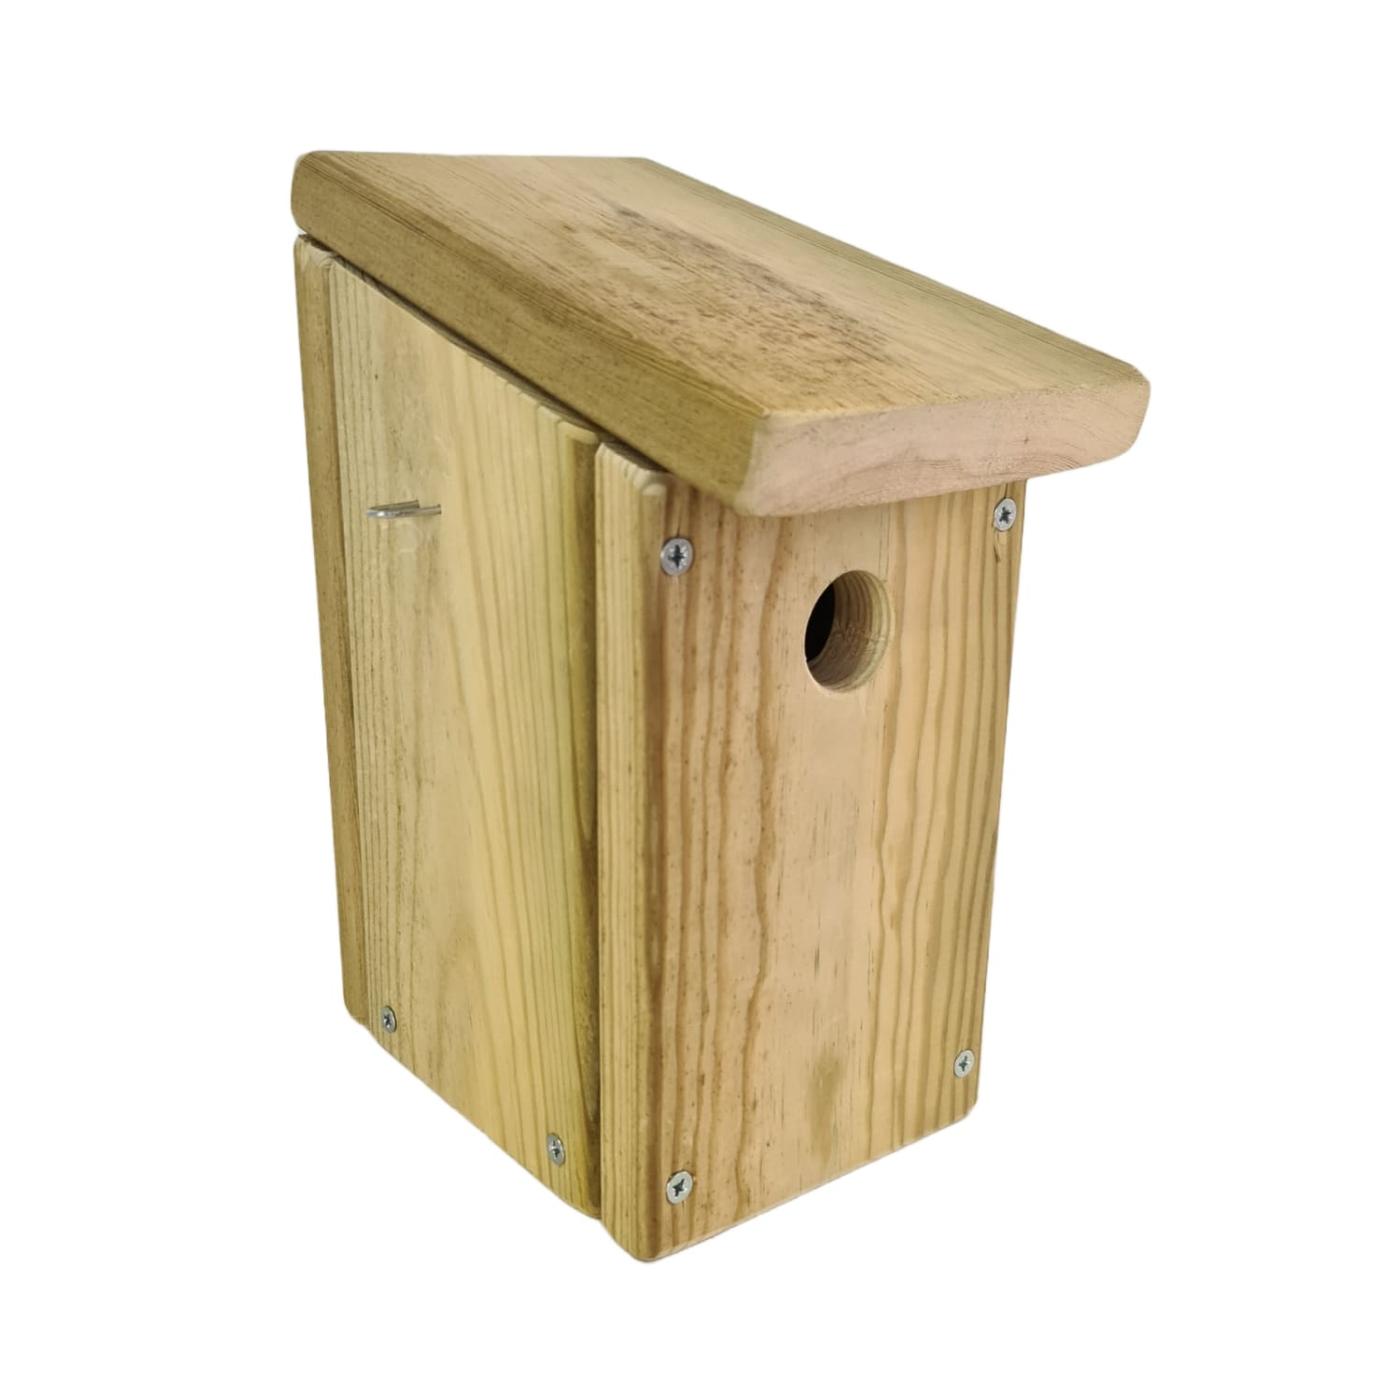 Casa de pássaros feita de madeira tratada para uso exterior em autoclave de nível IV.